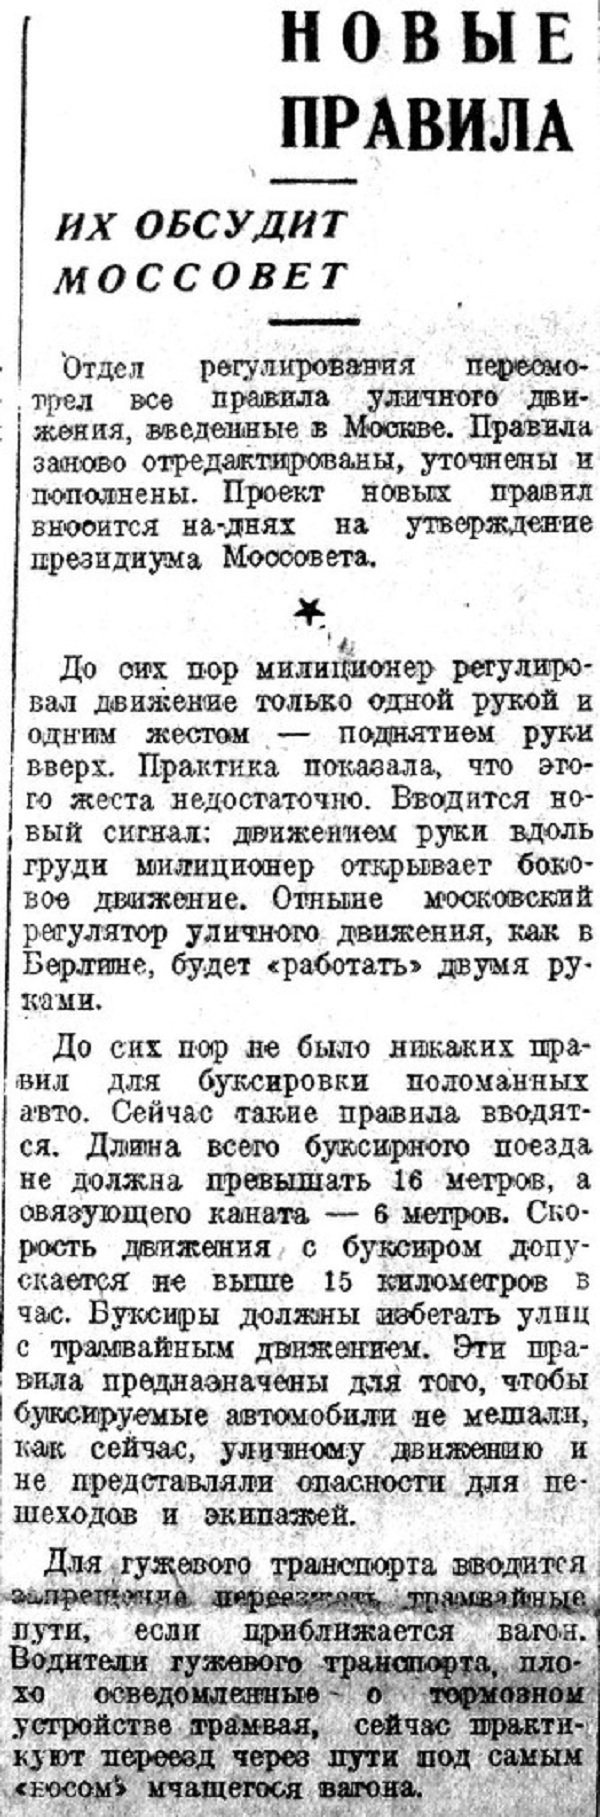 Хроника московской жизни. 1930-е. 1 декабря